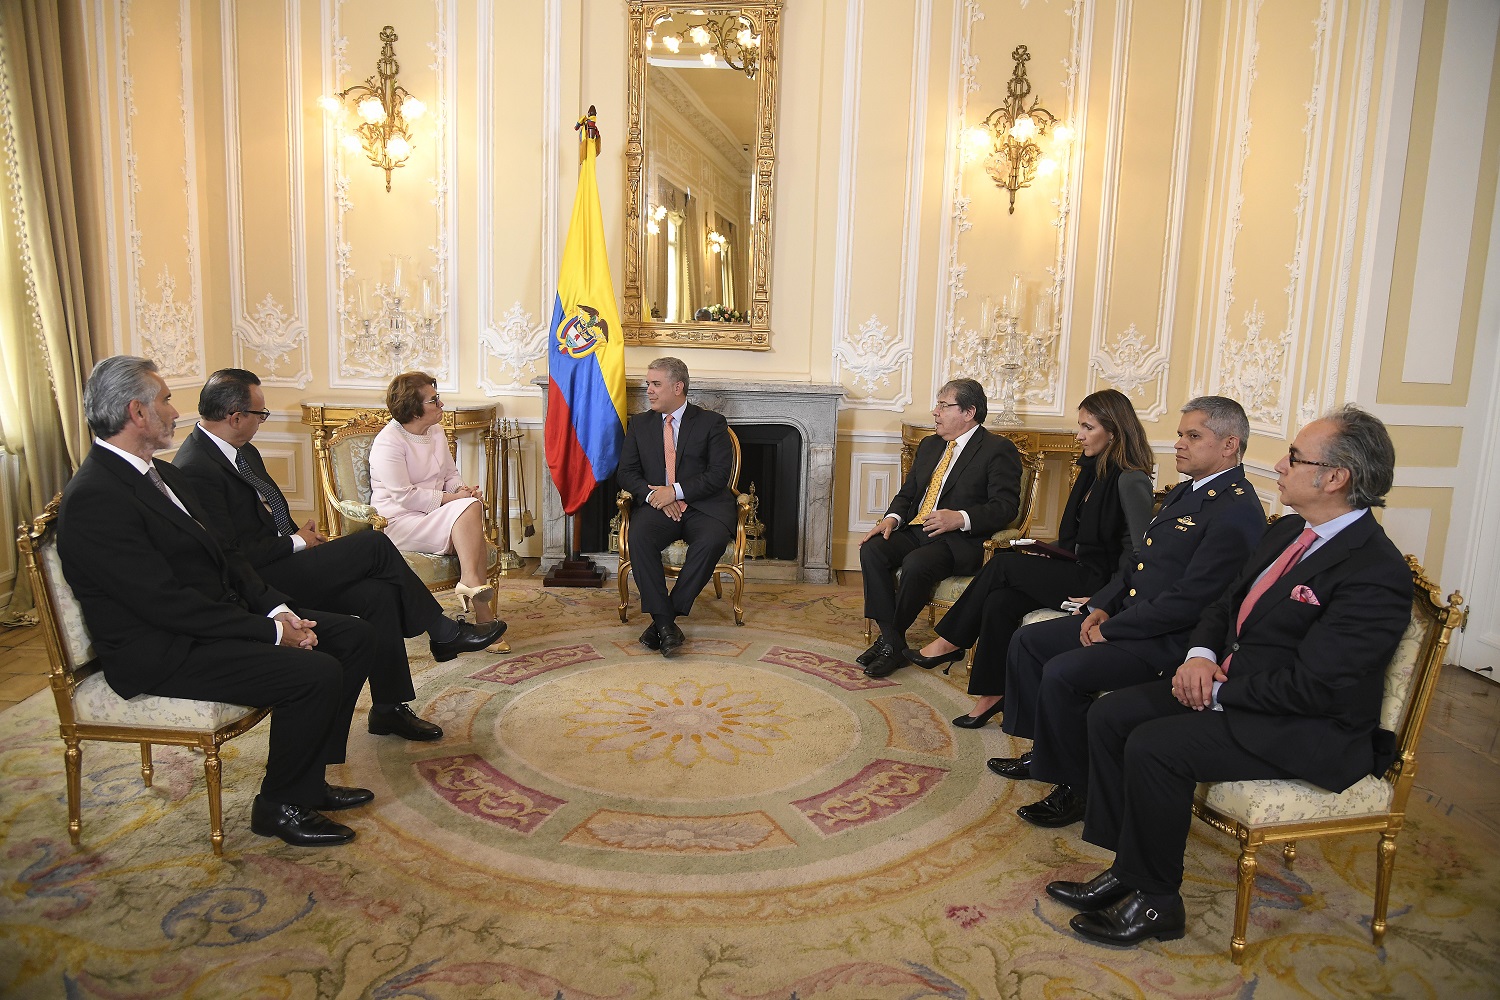 La Embajadora de Costa Rica en Colombia, María Fullmen Salazar, presentó cartas credenciales al Presidente Iván Duque